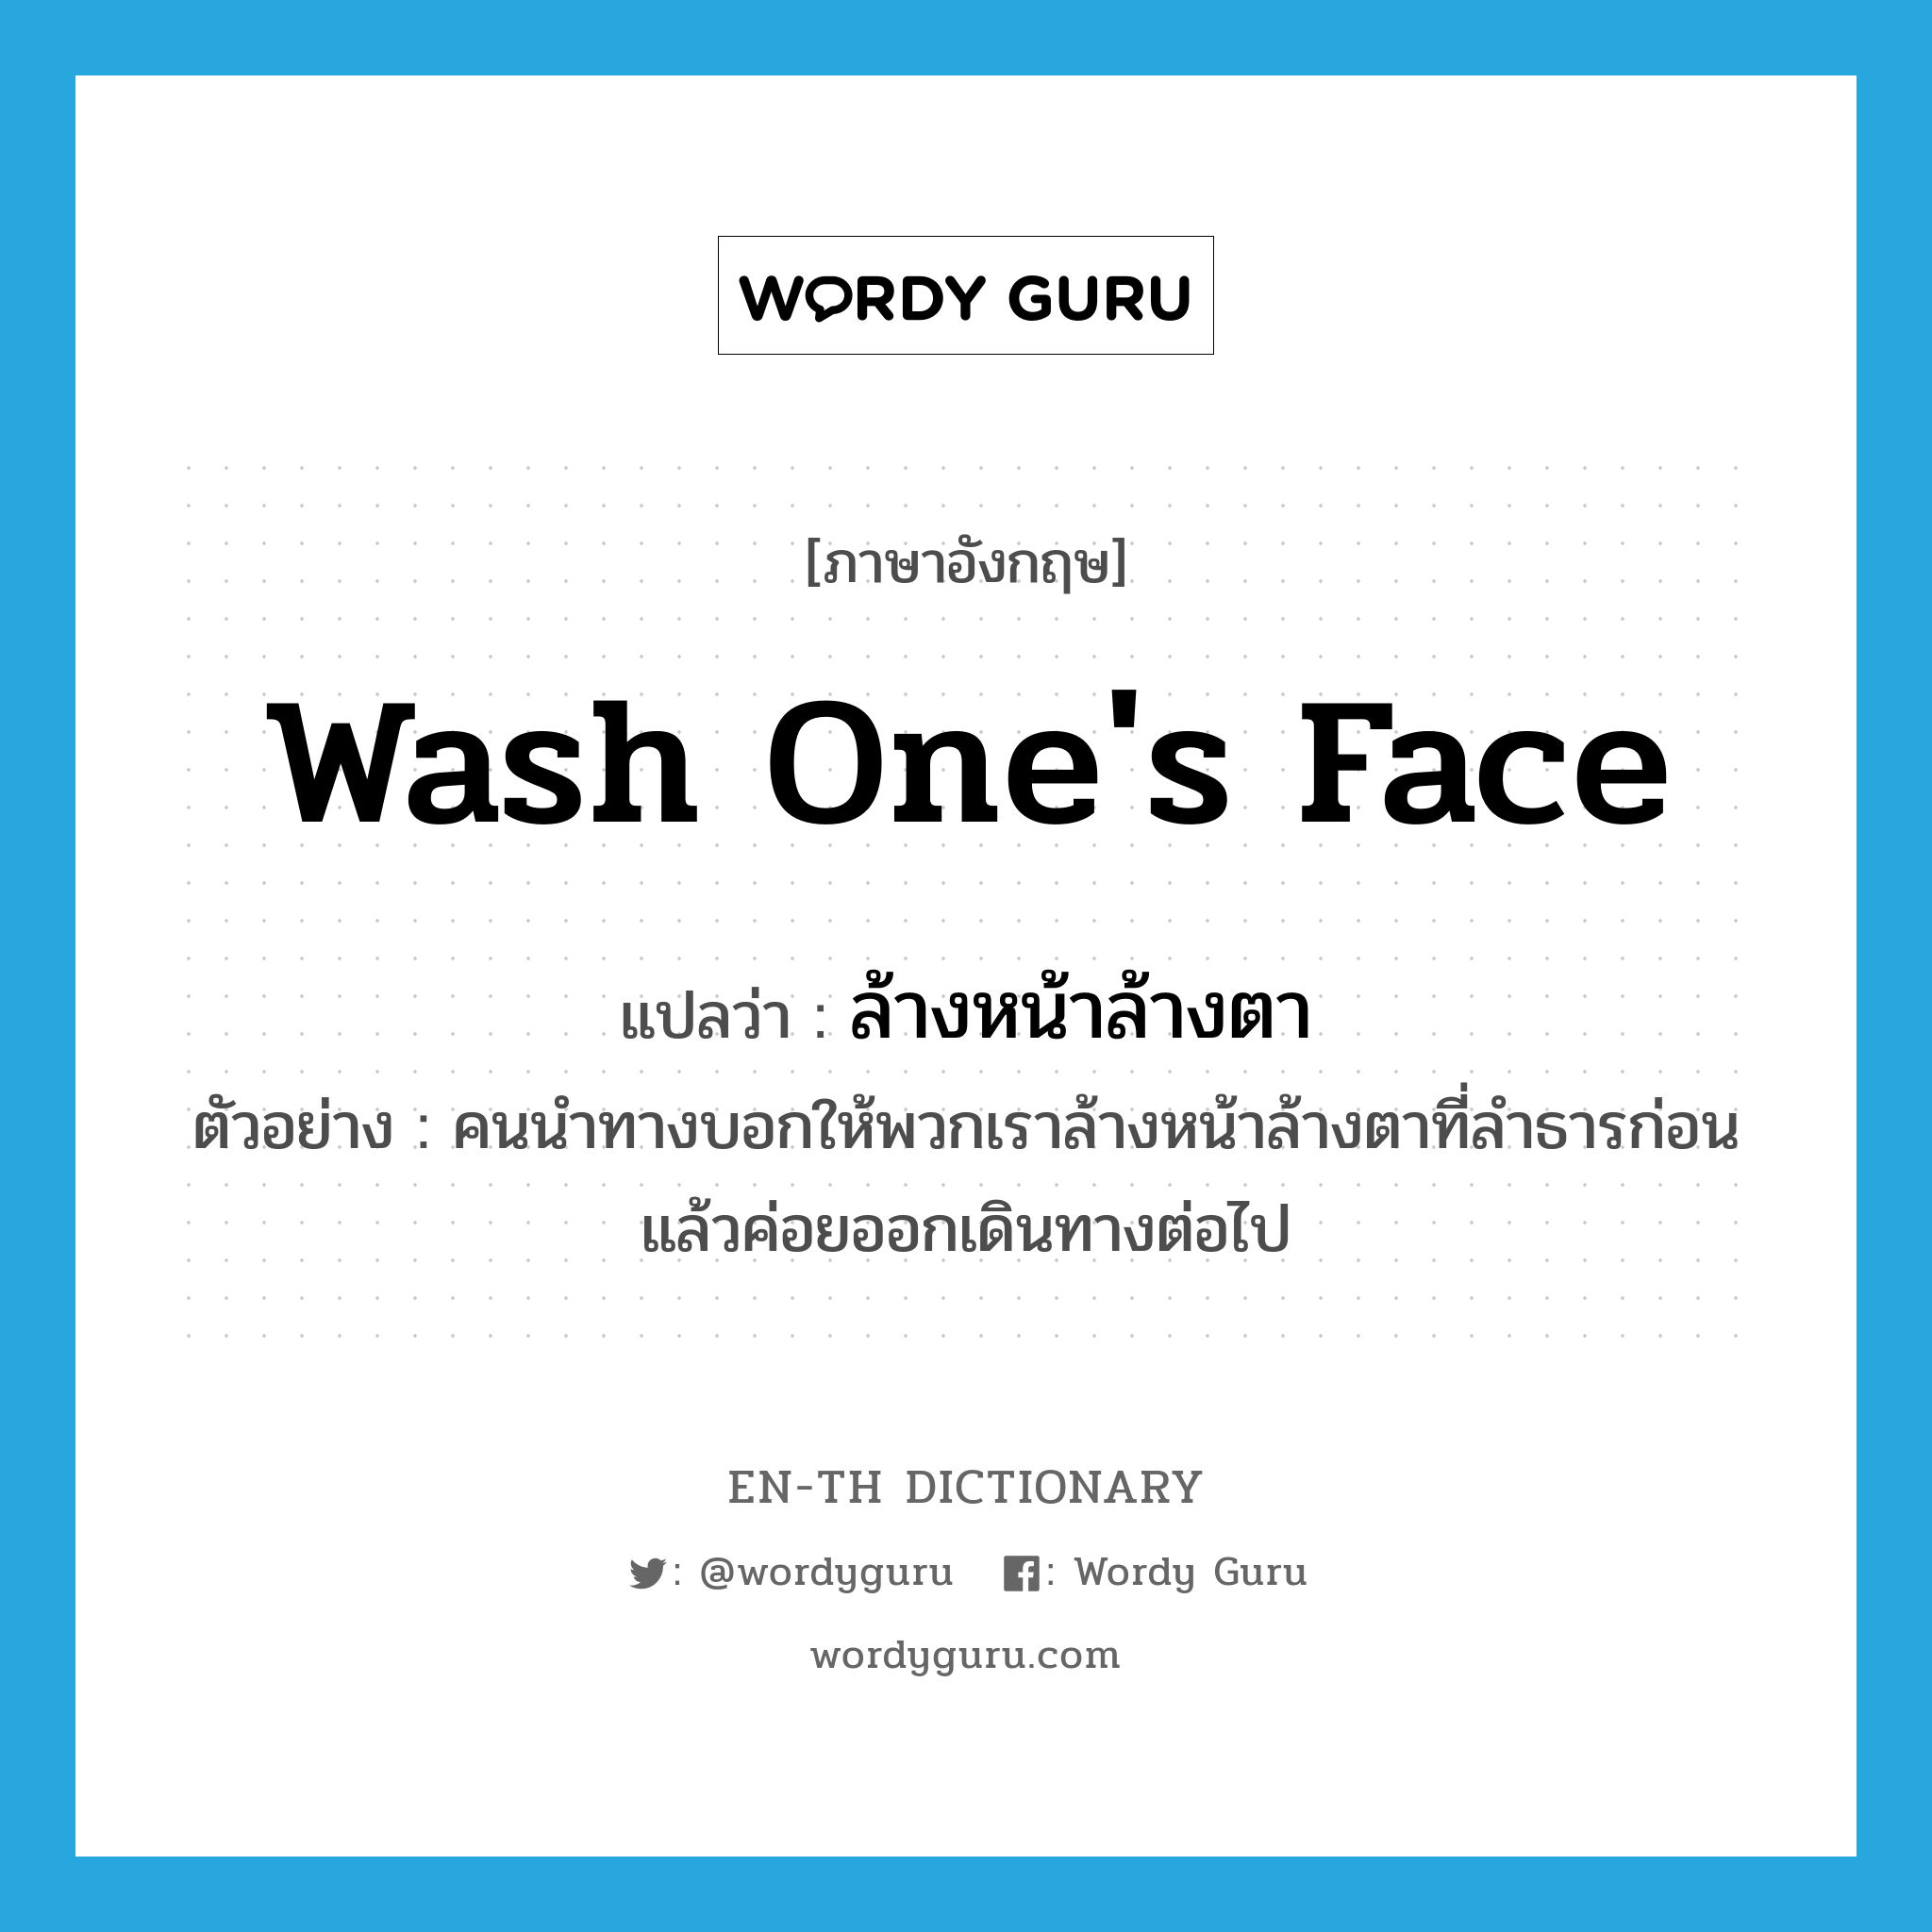 wash one's face แปลว่า?, คำศัพท์ภาษาอังกฤษ wash one's face แปลว่า ล้างหน้าล้างตา ประเภท V ตัวอย่าง คนนำทางบอกให้พวกเราล้างหน้าล้างตาที่ลำธารก่อน แล้วค่อยออกเดินทางต่อไป หมวด V